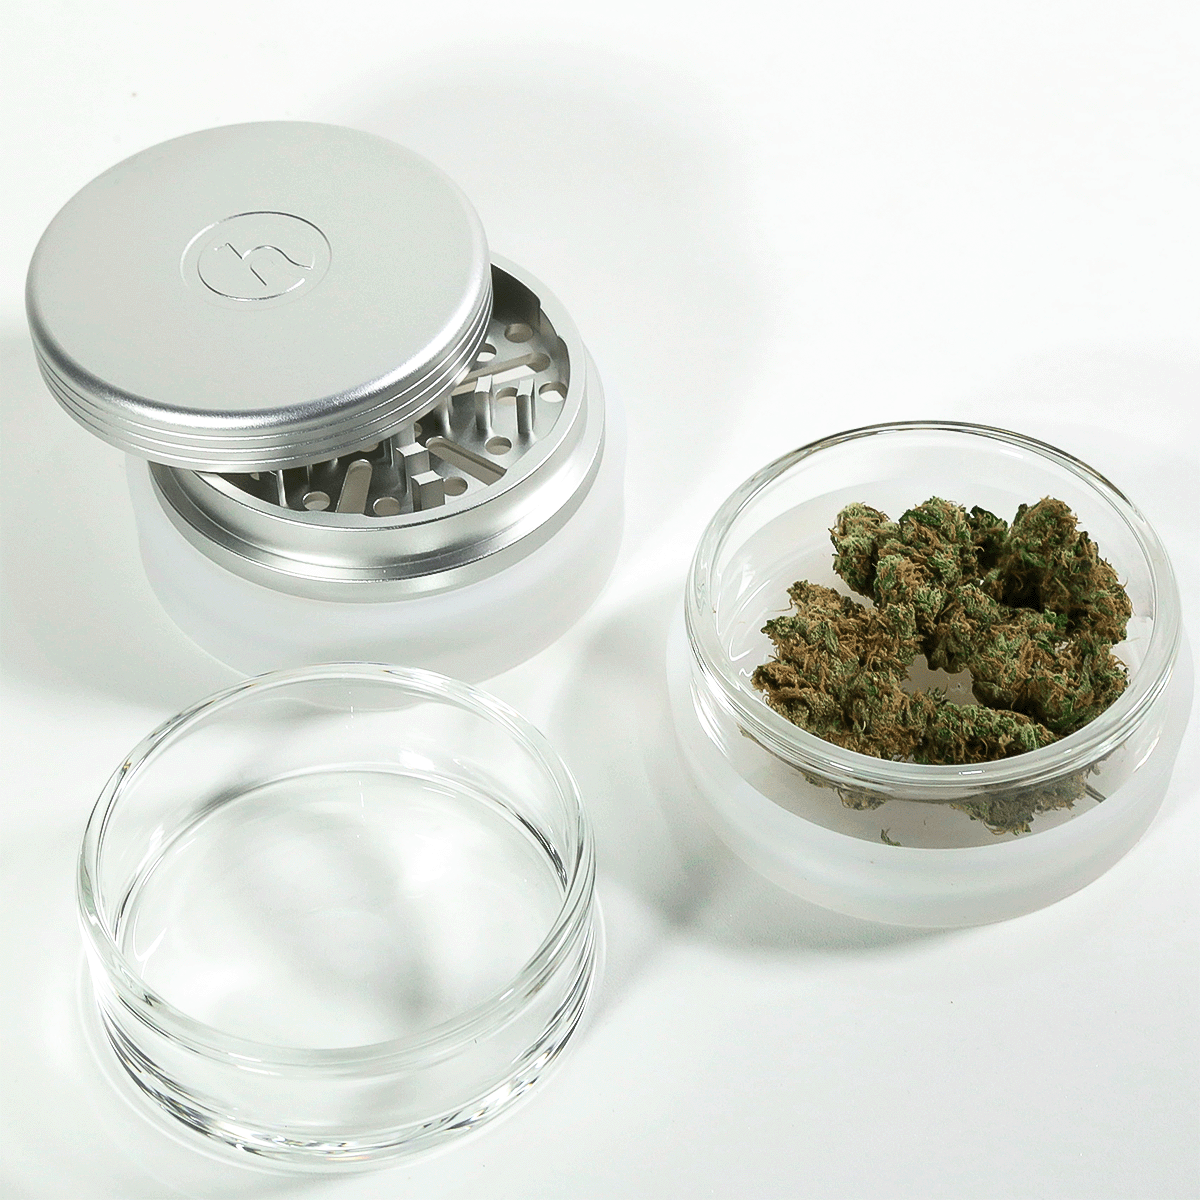 weed grinder and stash jar set